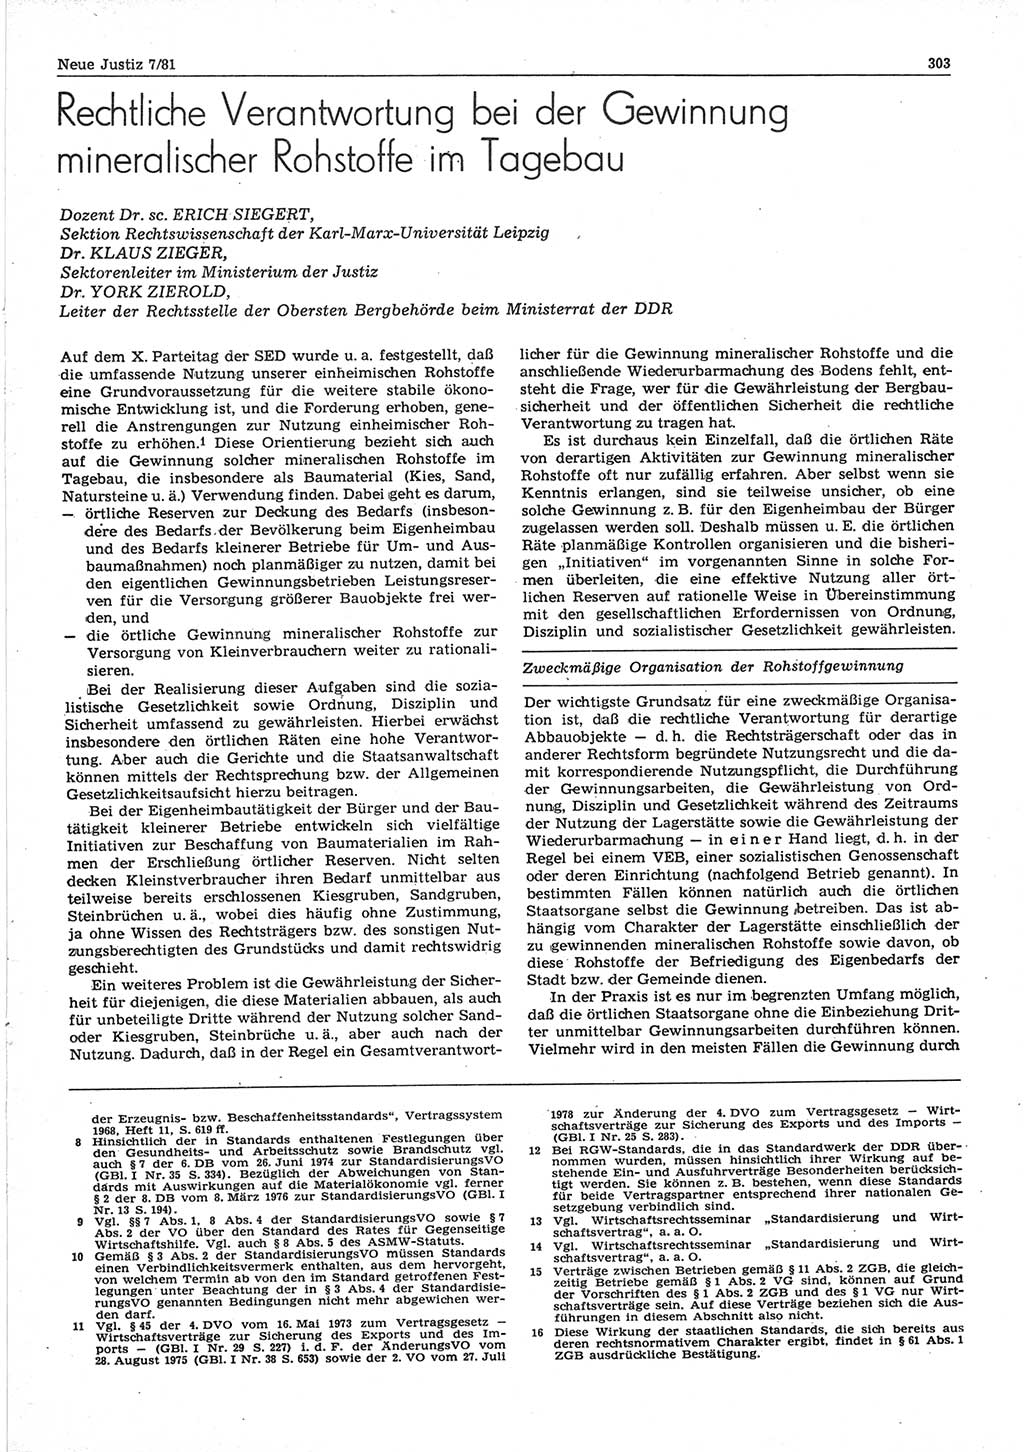 Neue Justiz (NJ), Zeitschrift für sozialistisches Recht und Gesetzlichkeit [Deutsche Demokratische Republik (DDR)], 35. Jahrgang 1981, Seite 303 (NJ DDR 1981, S. 303)